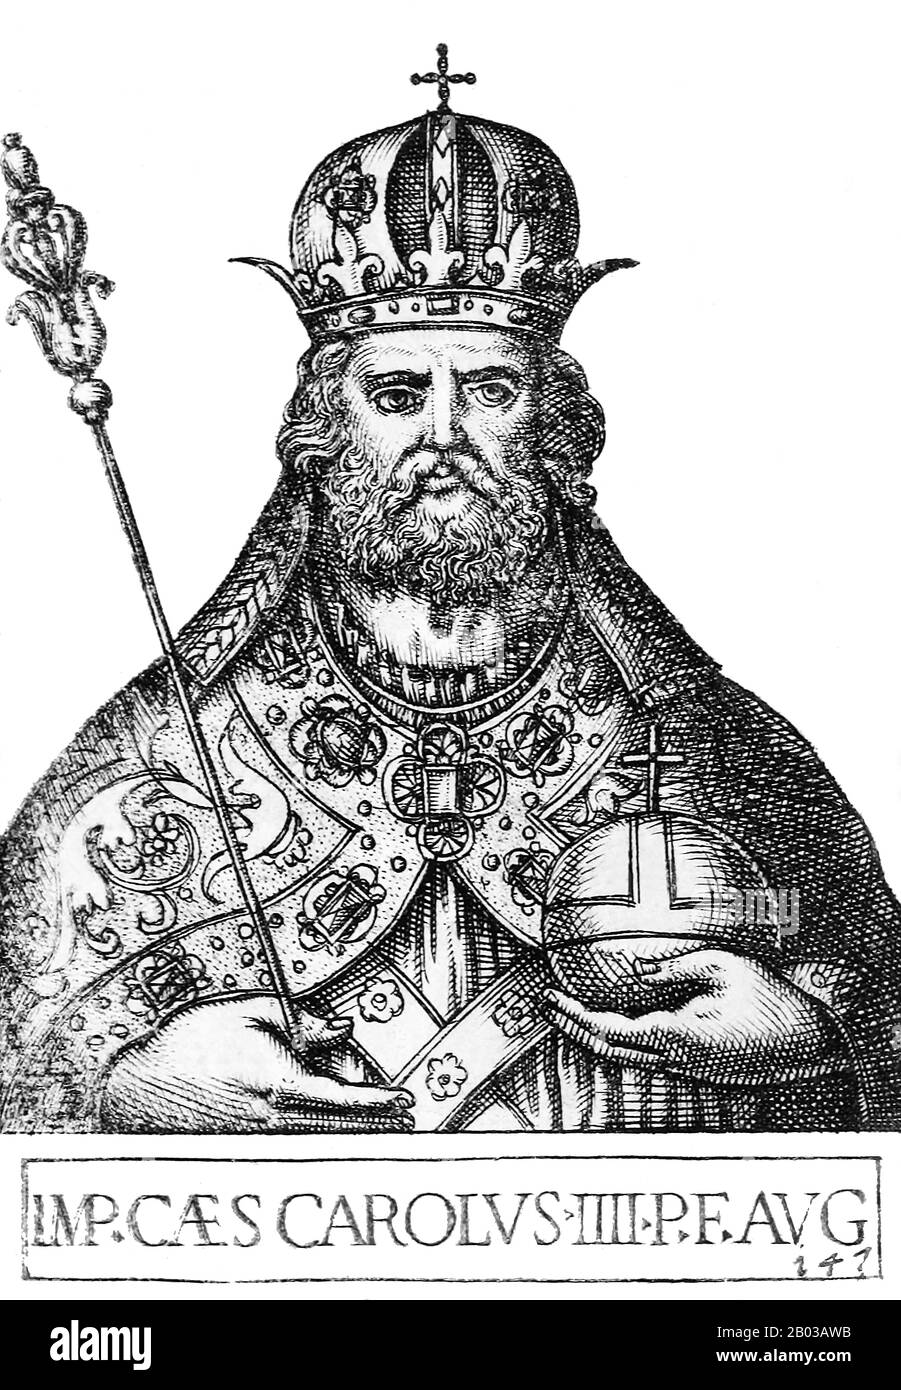 Carlo IV (1316-1378), nato Venceslao, era il figlio maggiore del re Giovanni di Boemia e nipote dell'imperatore Enrico VII, facendogli parte della dinastia lussemburghese. Carlo fu incoronato Re d'Italia e Sacro Romano Imperatore nel 1355, e successivamente divenne Re di Borgogna nel 1365, rendendolo il dominatore personale di tutti i regni del Sacro Romano Impero. Foto Stock